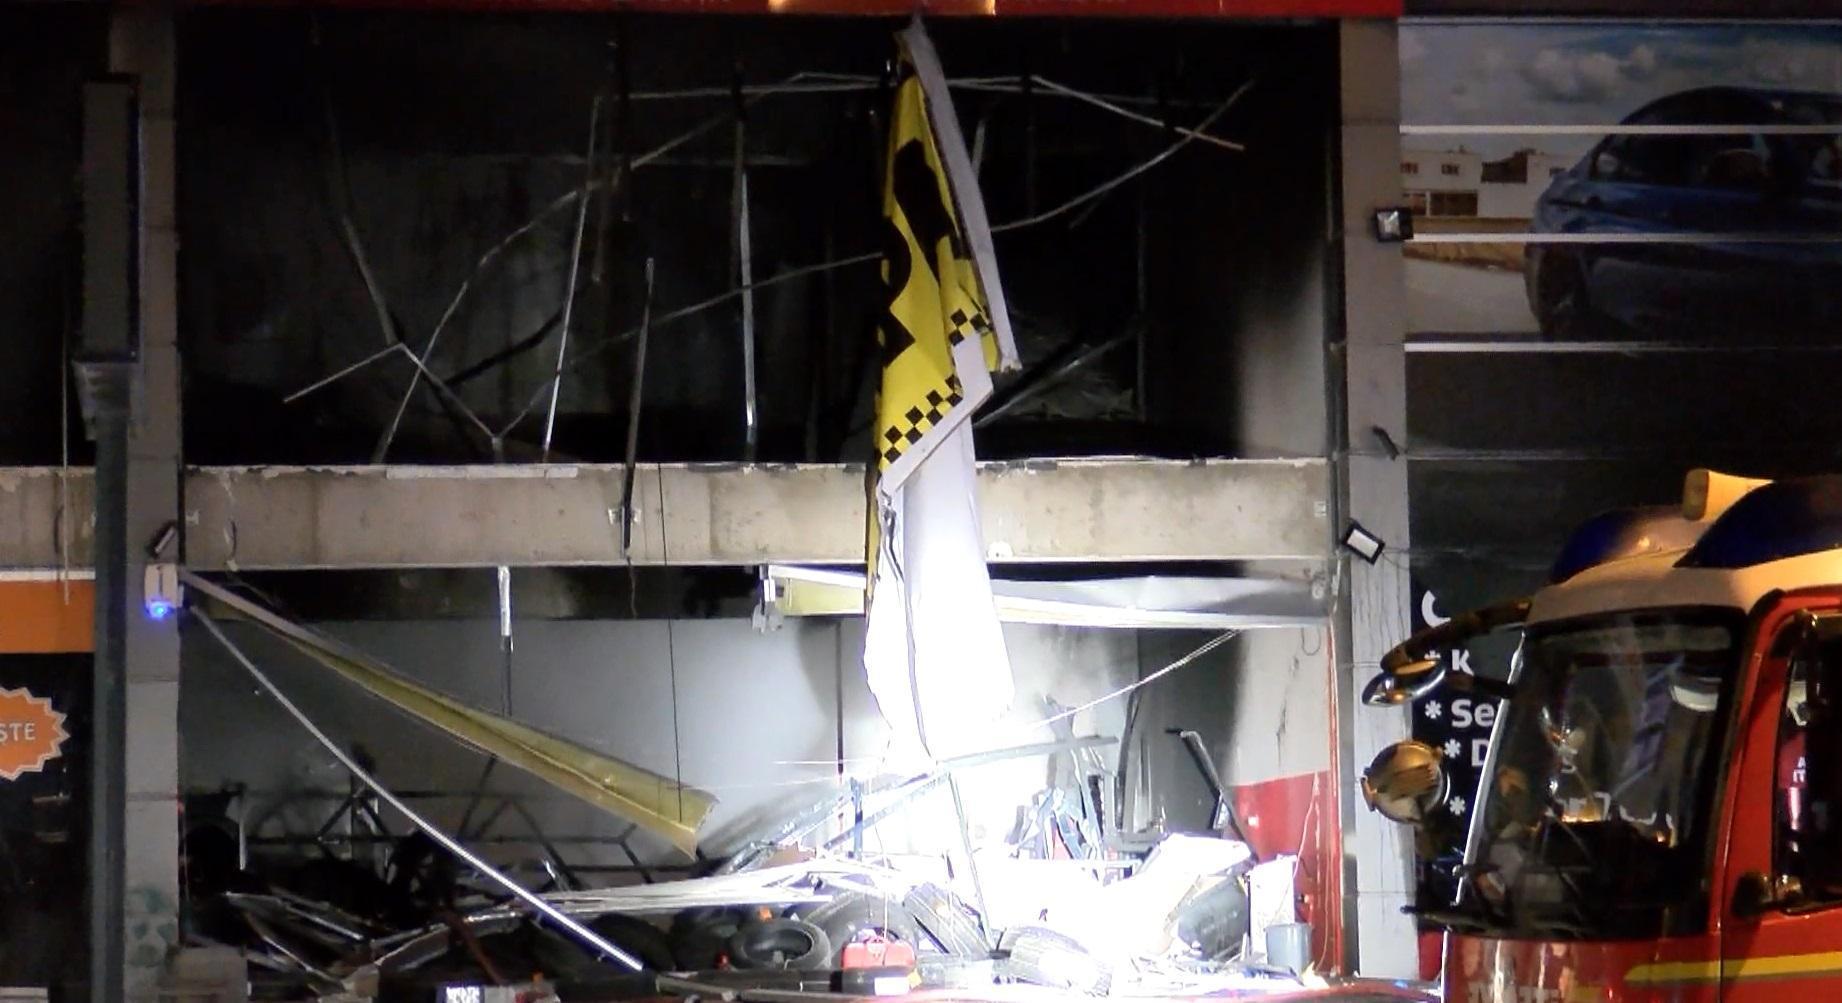 Oto lastikçide patlama sonrası yangın; 1 kişi yaralandı, 3 iş yeri hasar gördü